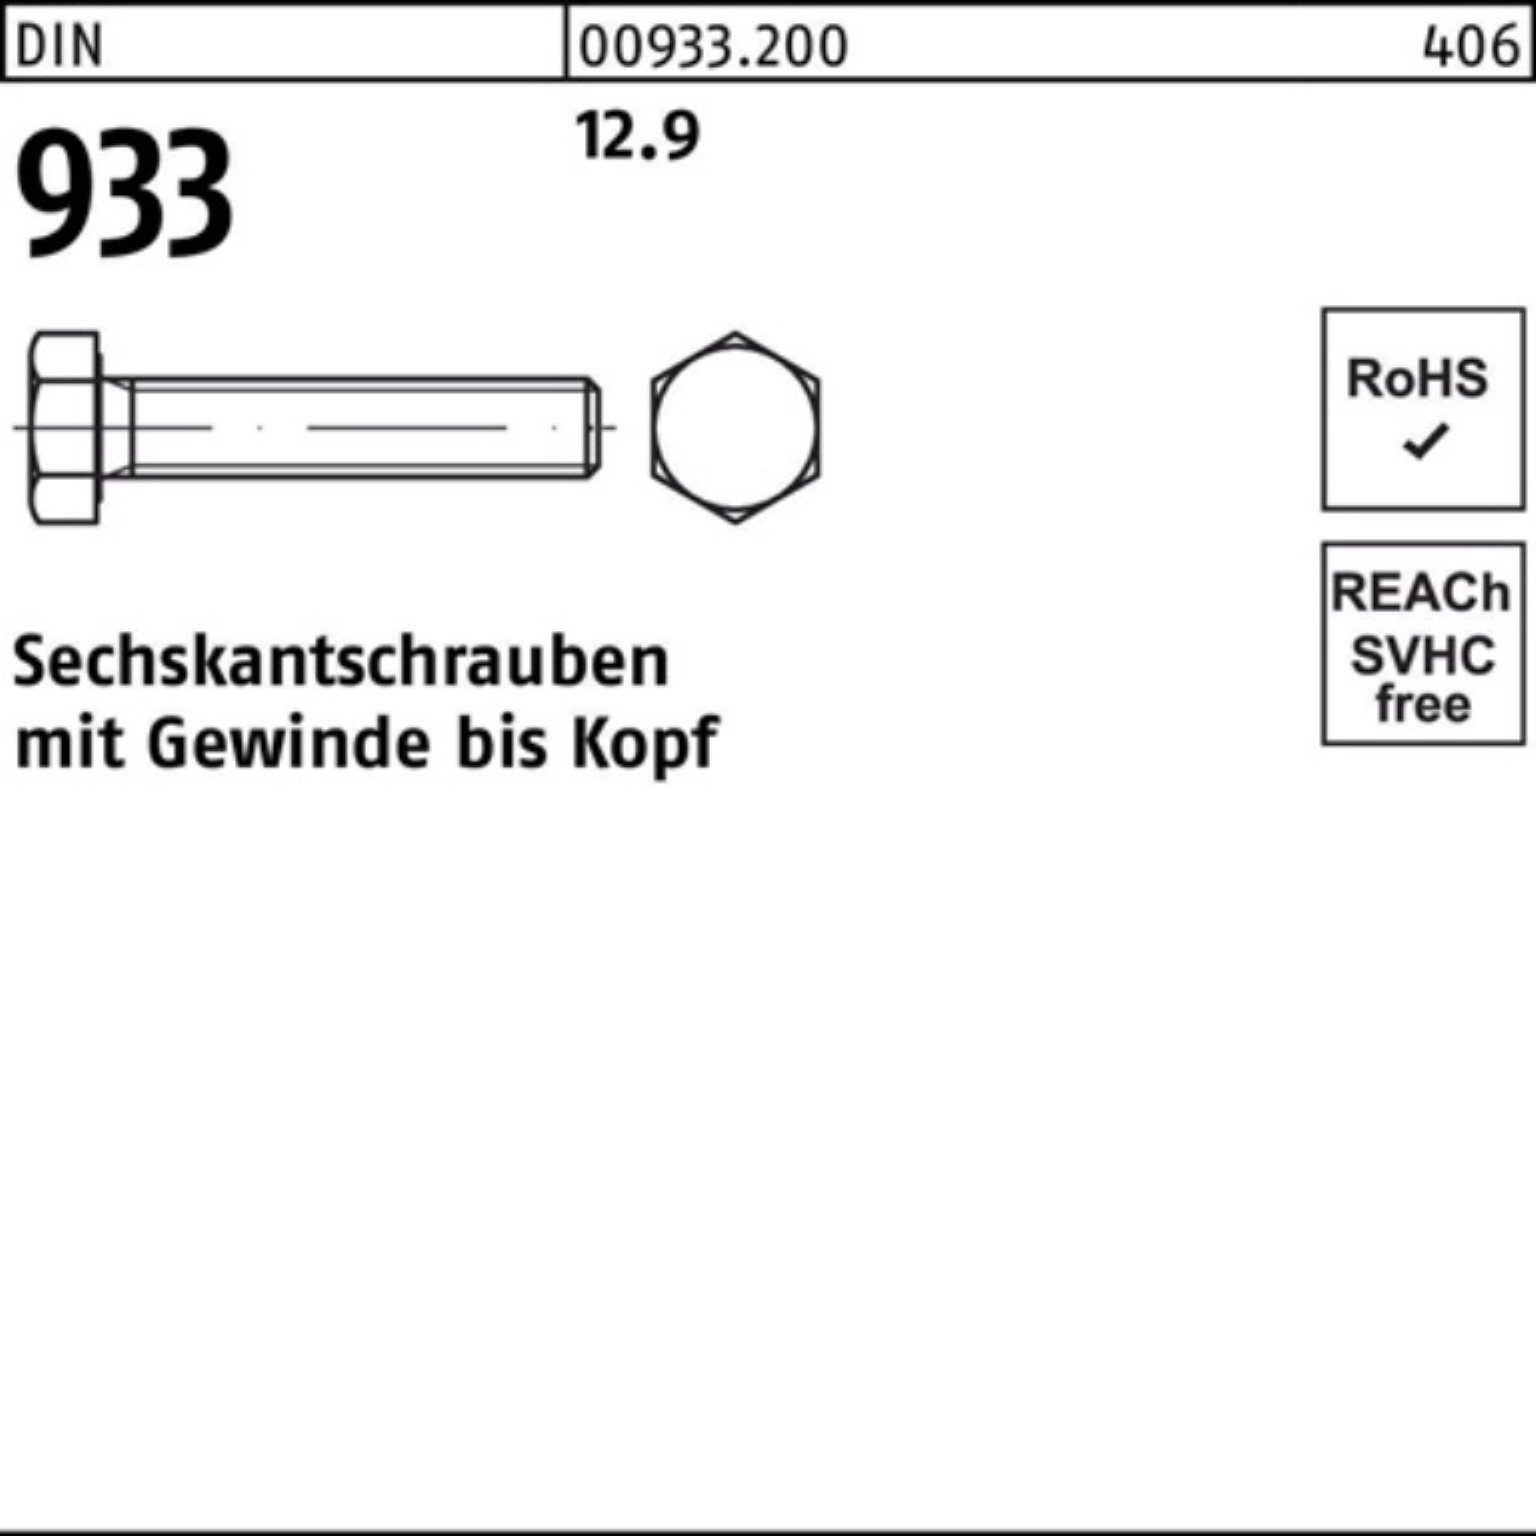 Reyher Sechskantschraube 200er Pack DIN VG 25 Sechskantschraube 933 DIN 933 Stück M8x 12.9 200